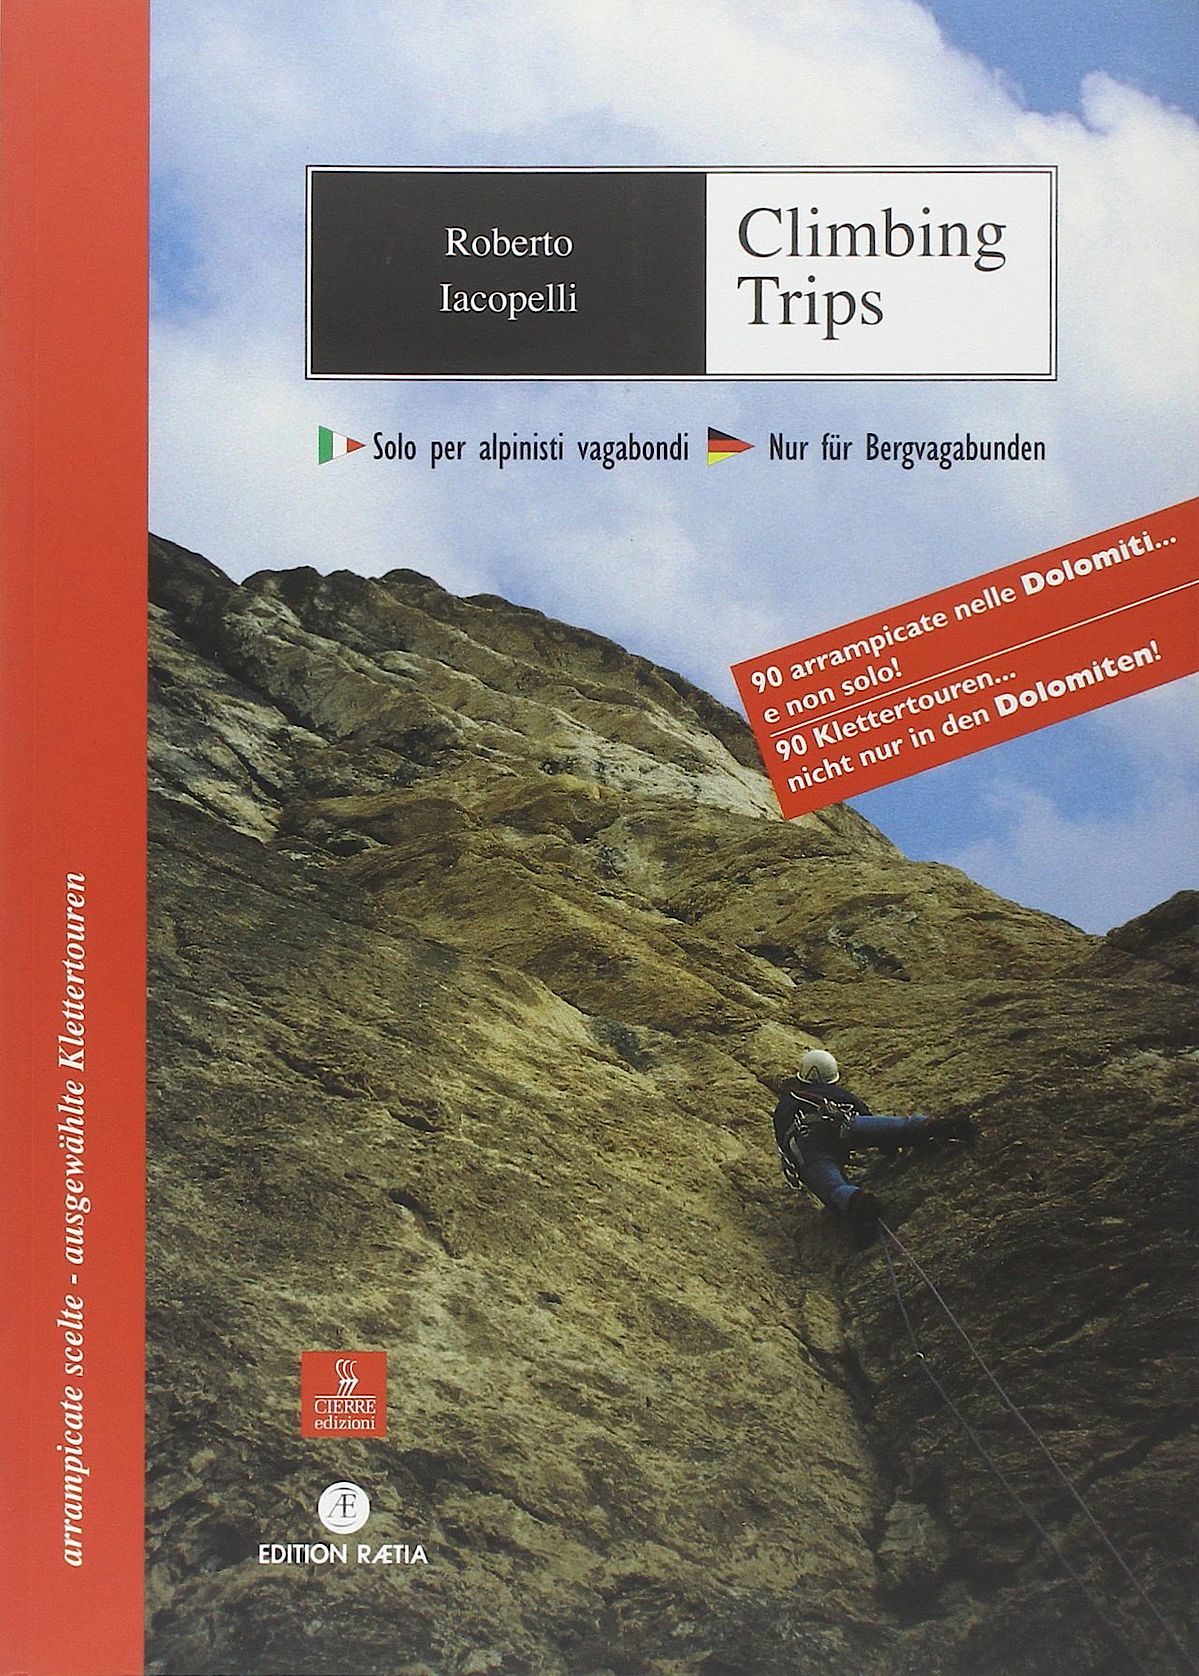 Climbing Trips - ausgewählte Klettertouren...nicht nur in den Dolomiten